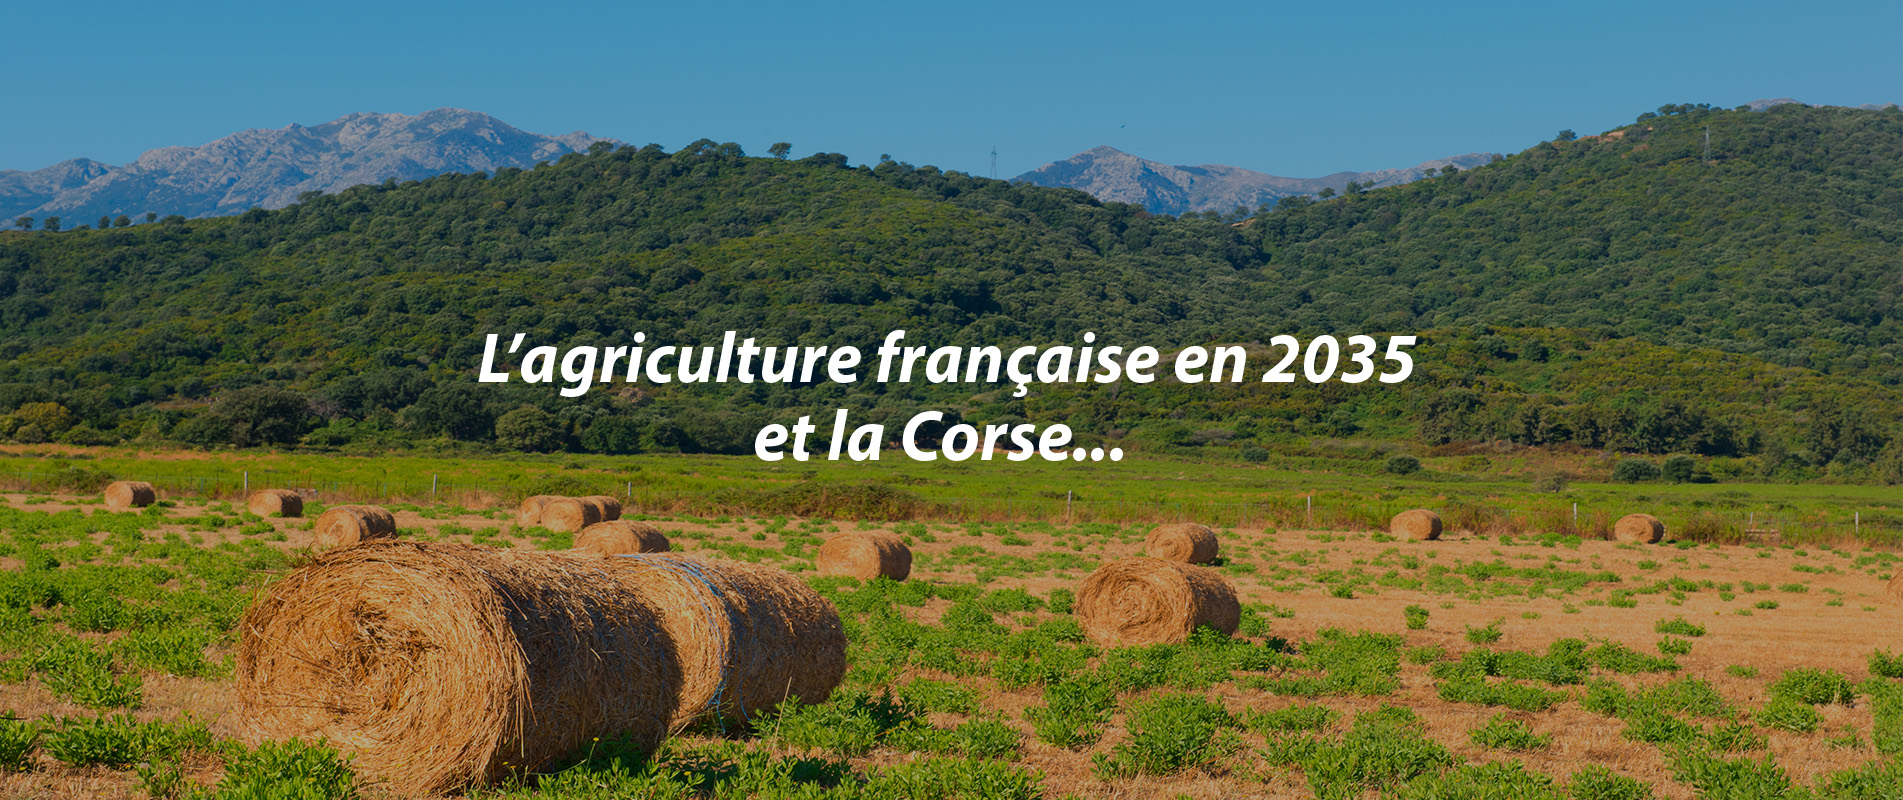 L’agriculture française en 2035 et la Corse…